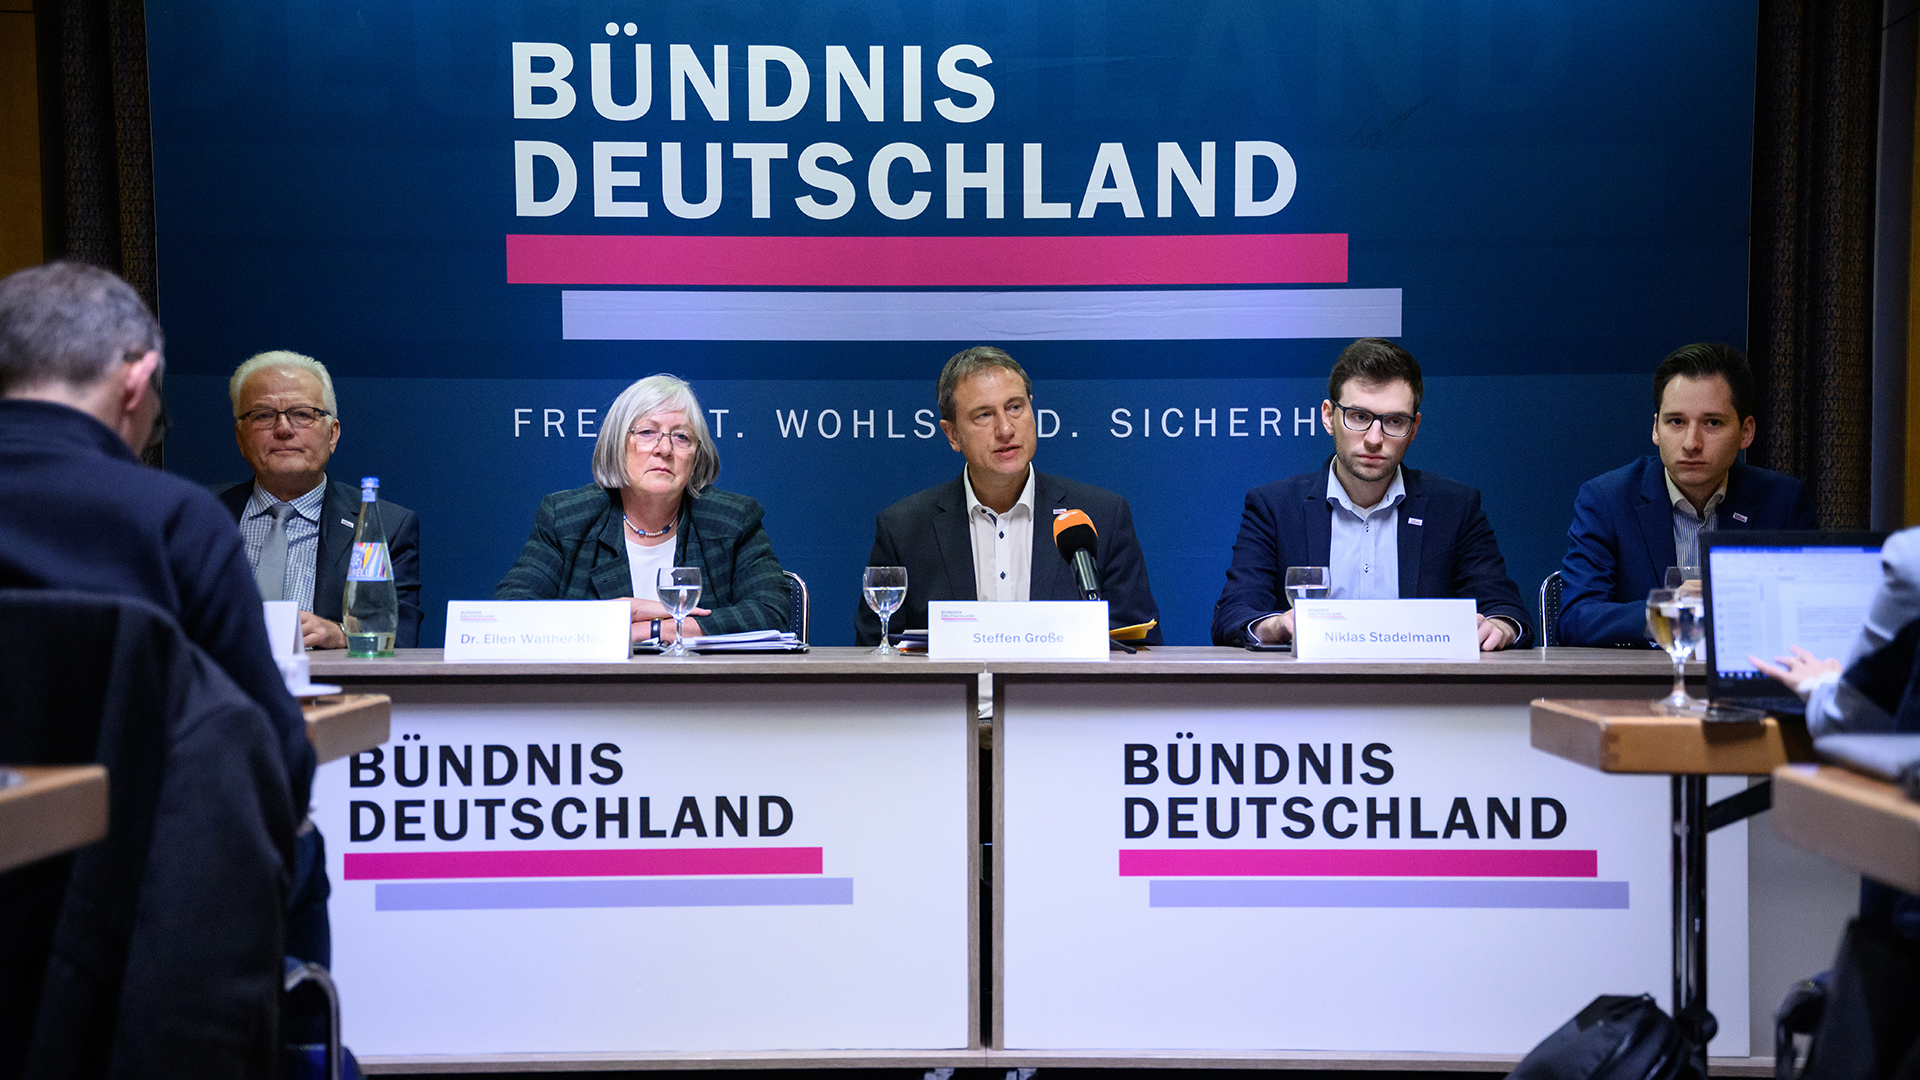 Neue konservative Partei “Bündnis Deutschland” gegründet